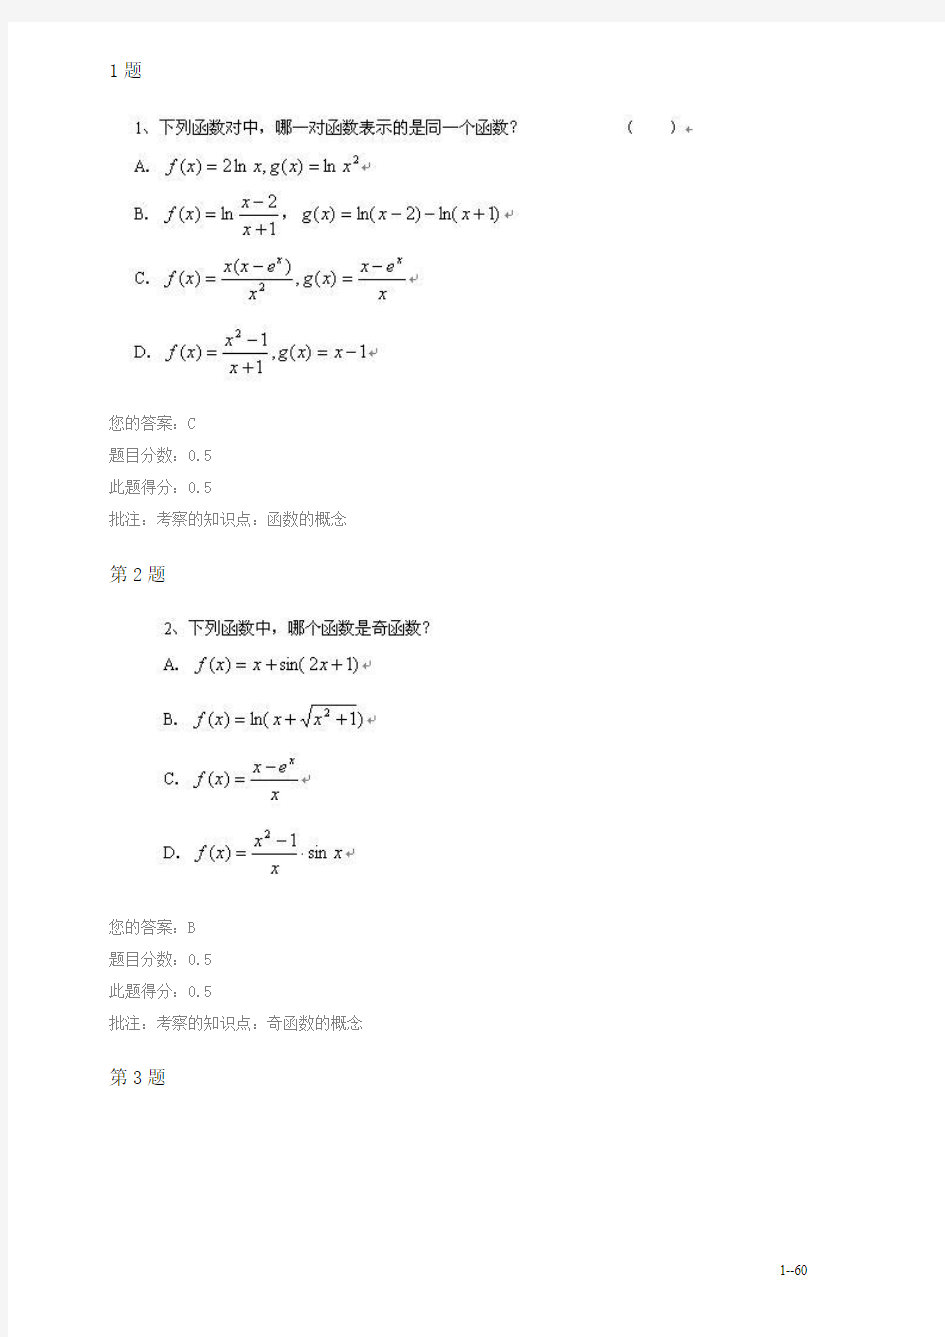 中国石油大学(北京)高等数学(一)在线作业一、二、三